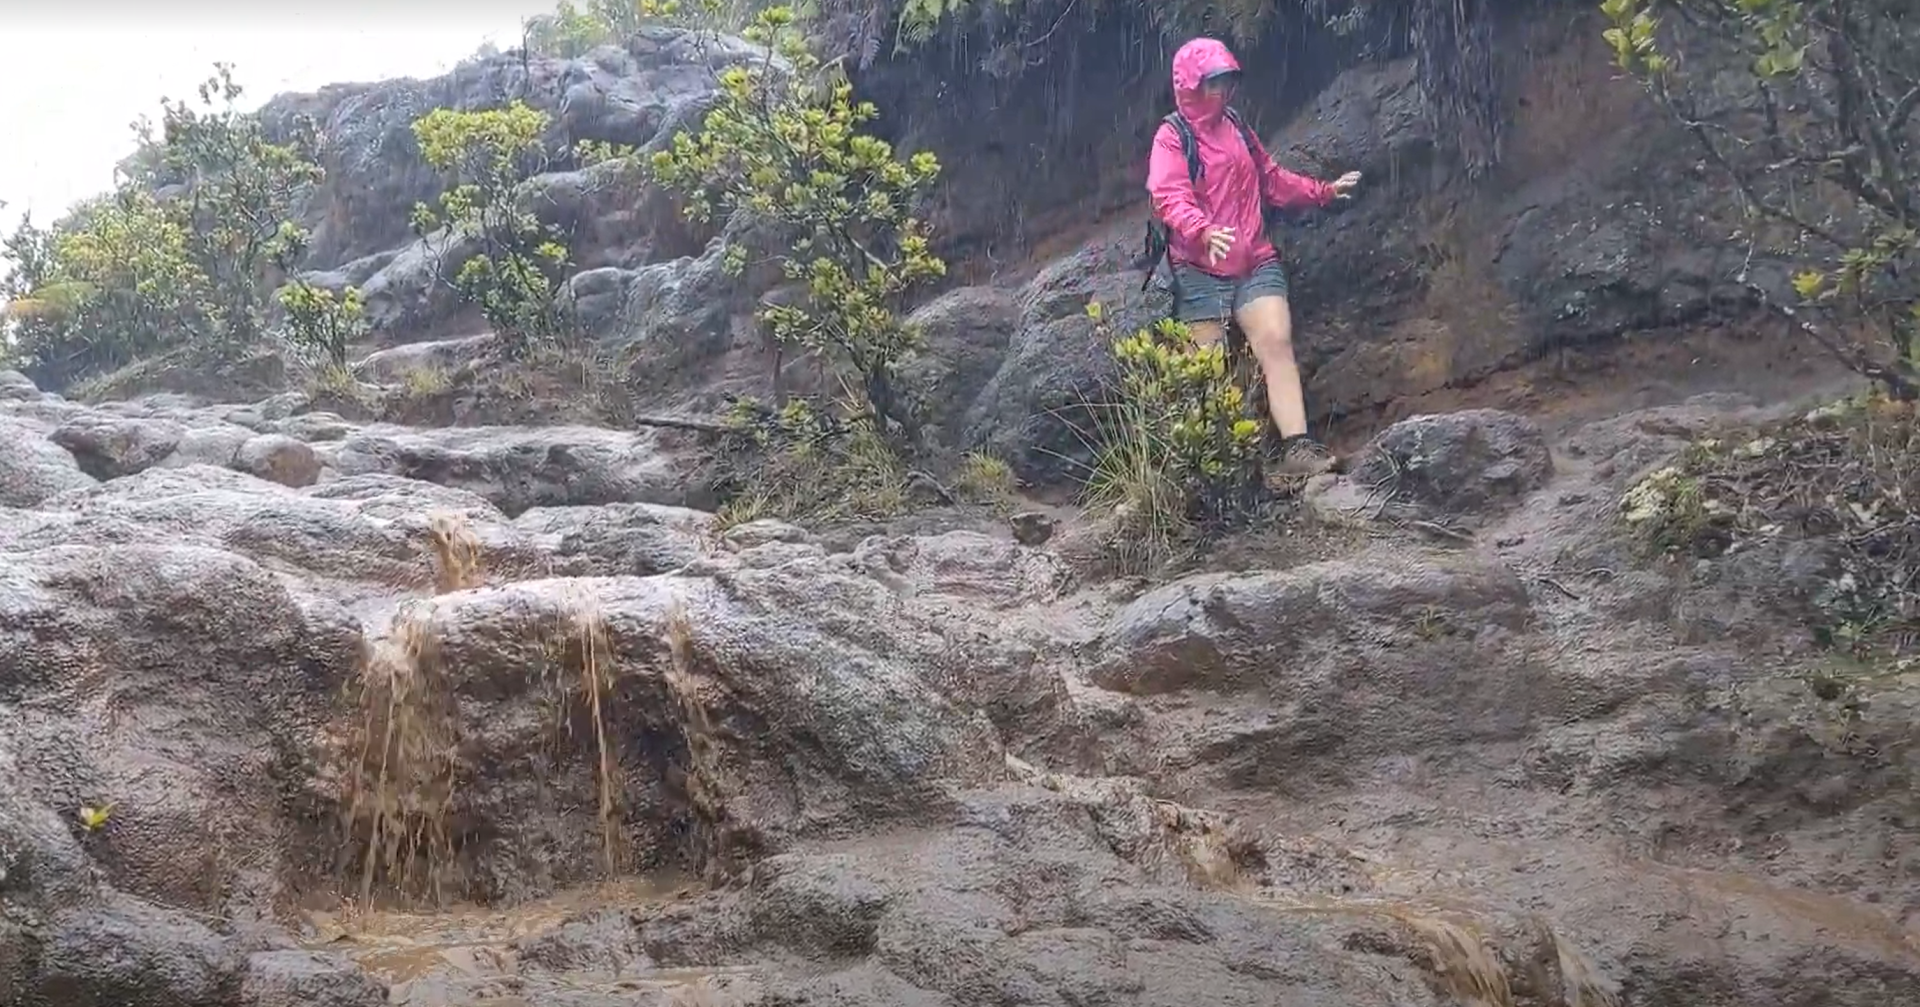 caitlin hiking in mud in hawaii